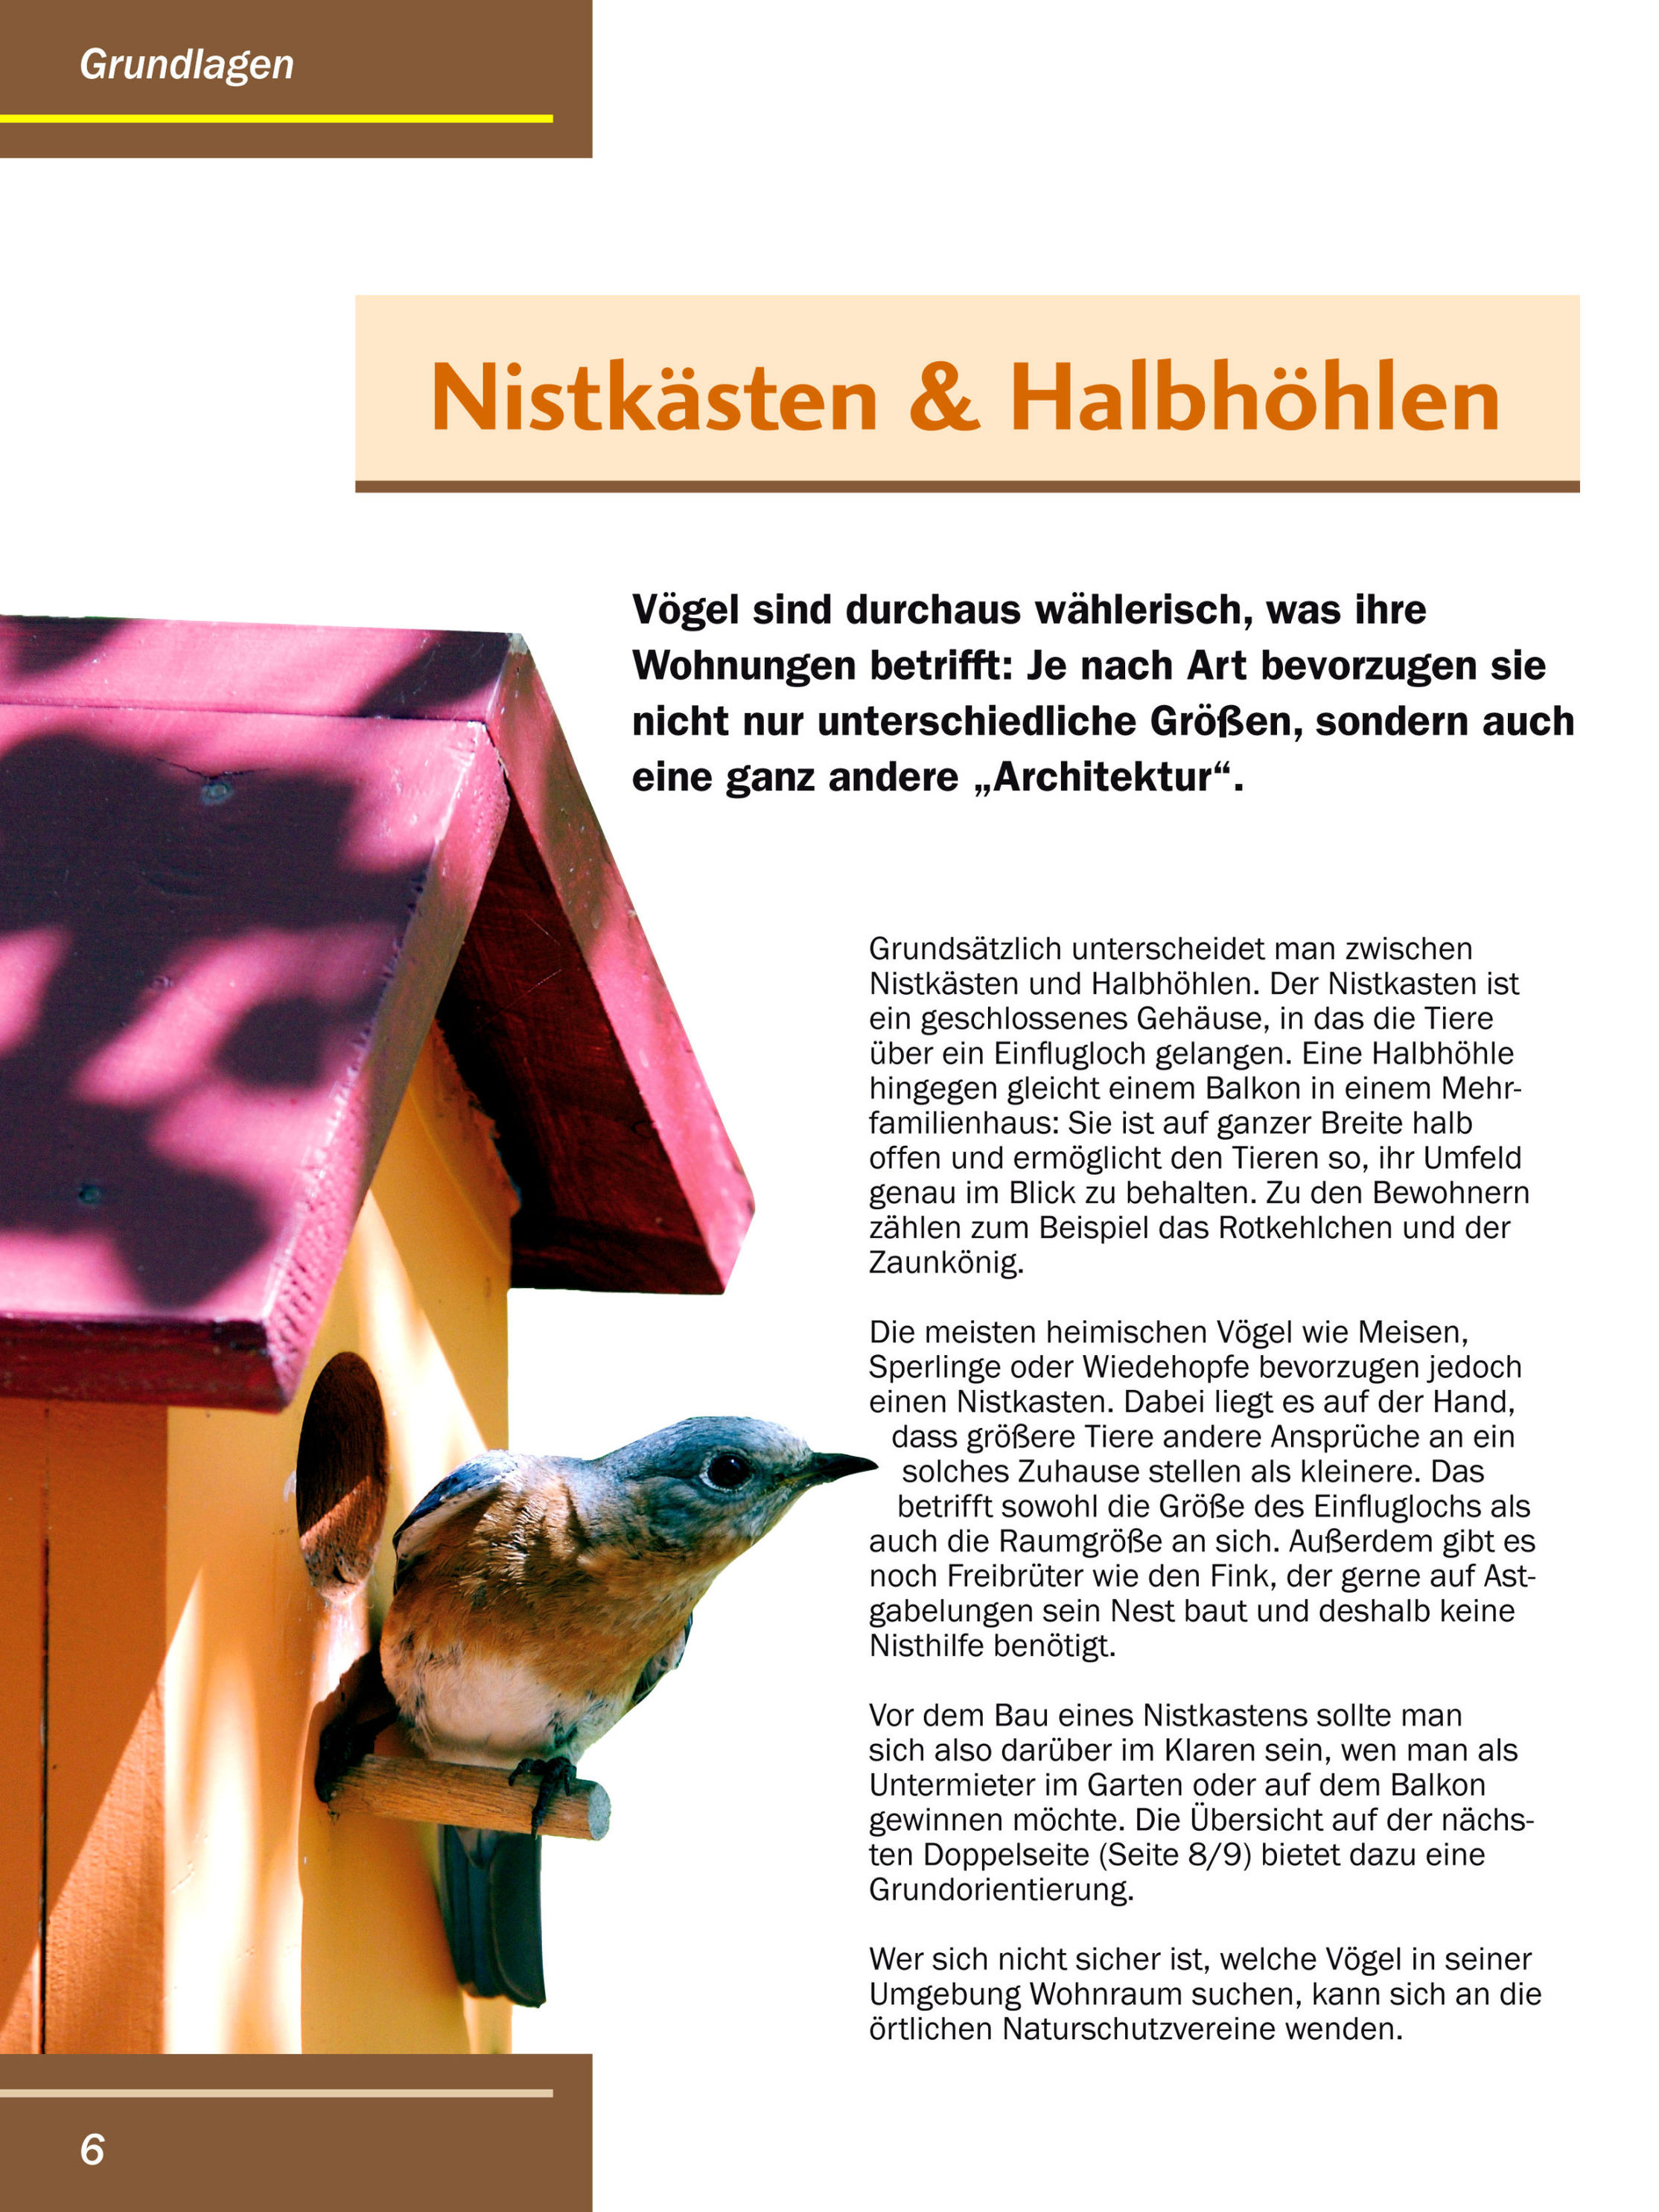 Vogelhäuschen Buch als Weltbild-Ausgabe günstig bestellen